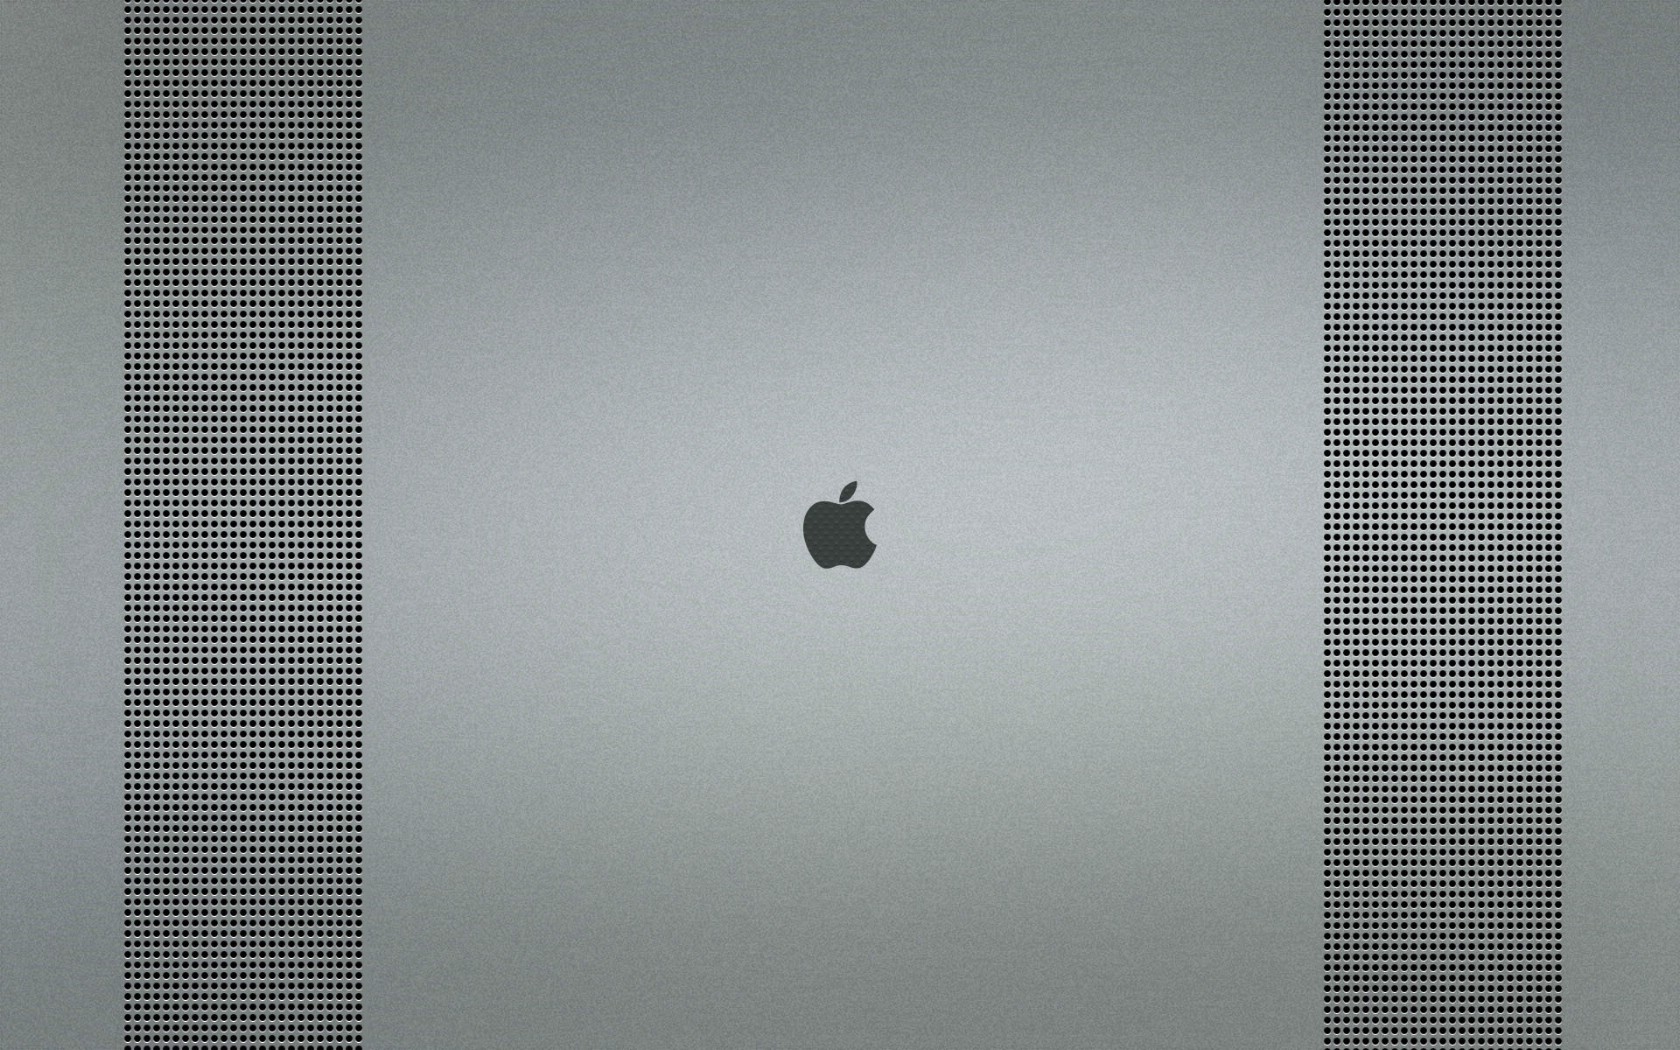 壁纸1680x1050Apple主题 58 11壁纸 Apple主题壁纸 Apple主题图片 Apple主题素材 系统壁纸 系统图库 系统图片素材桌面壁纸